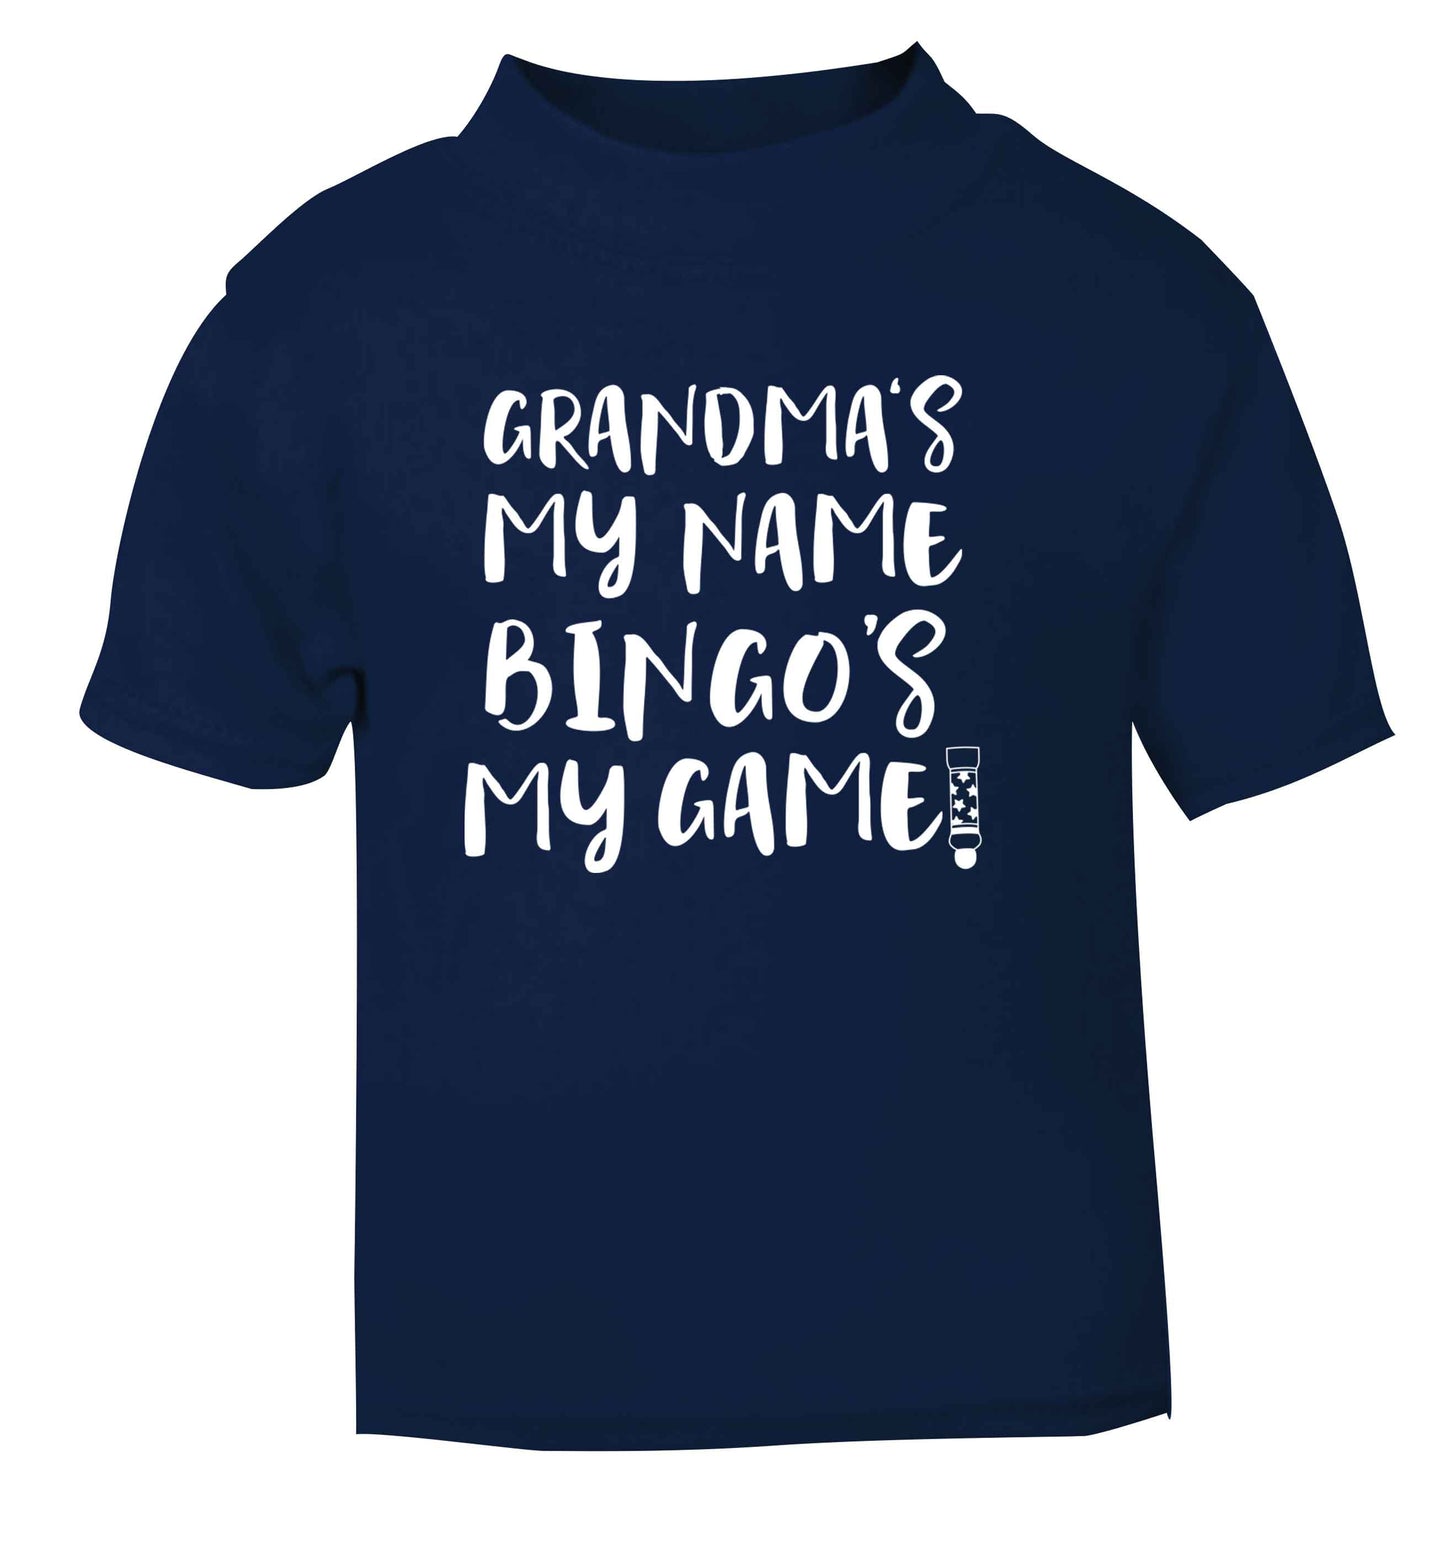 Grandma's my name bingo's my game! navy Baby Toddler Tshirt 2 Years